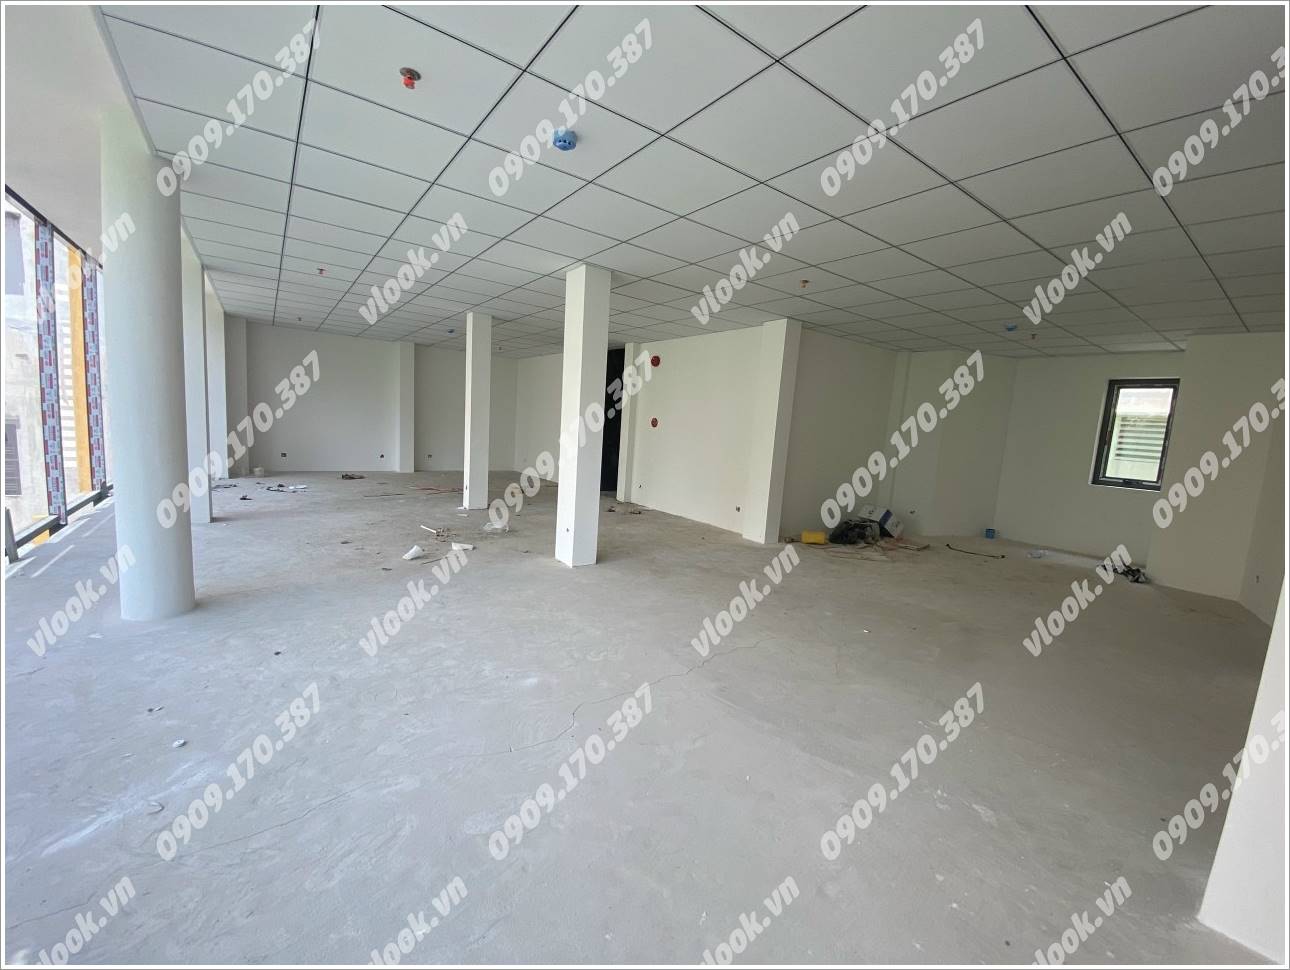 Cao ốc cho thuê văn phòng toà nhà M.G Building Đào Duy Anh, Quận Phú Nhuận - vlook.vn